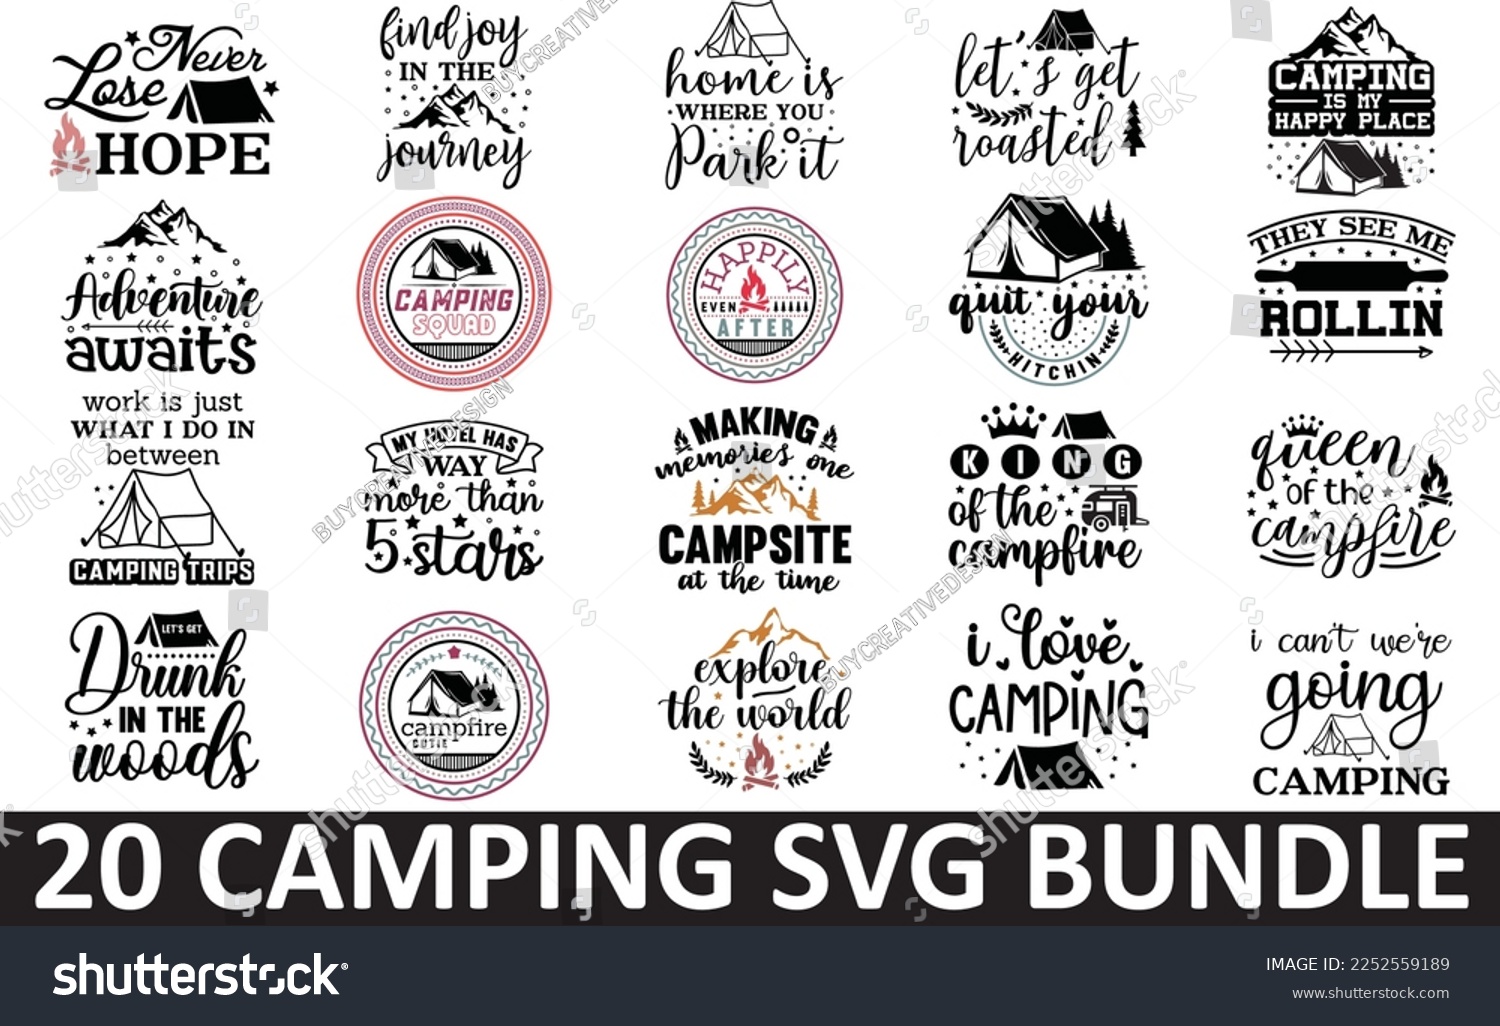 SVG of 20 Camping SVG Bundle, Camping Crew SVG svg